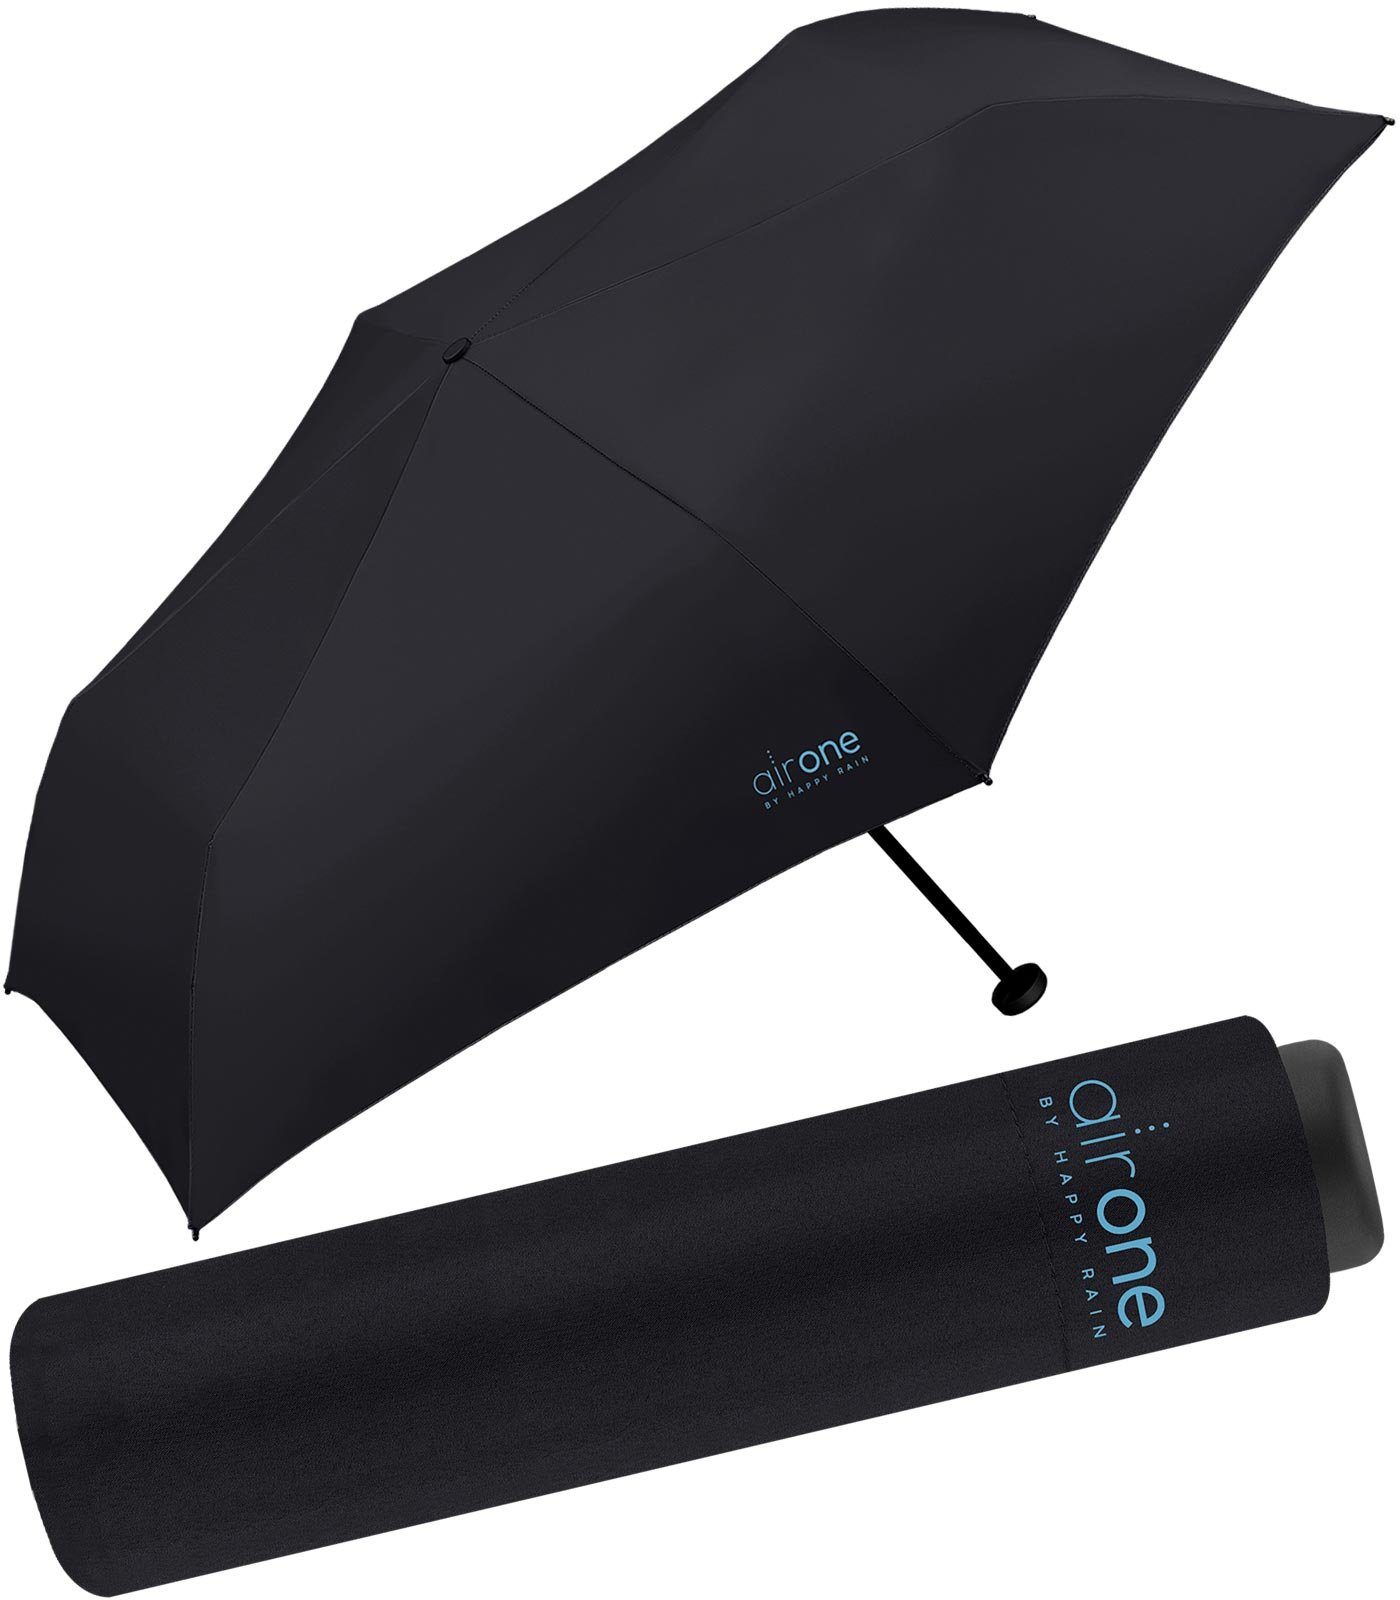 HAPPY RAIN für Minischirm schwarz 99 - Untewegs Gramm - Taschenregenschirm leichtester superleicht, perfekt One Air Mini-Schirm